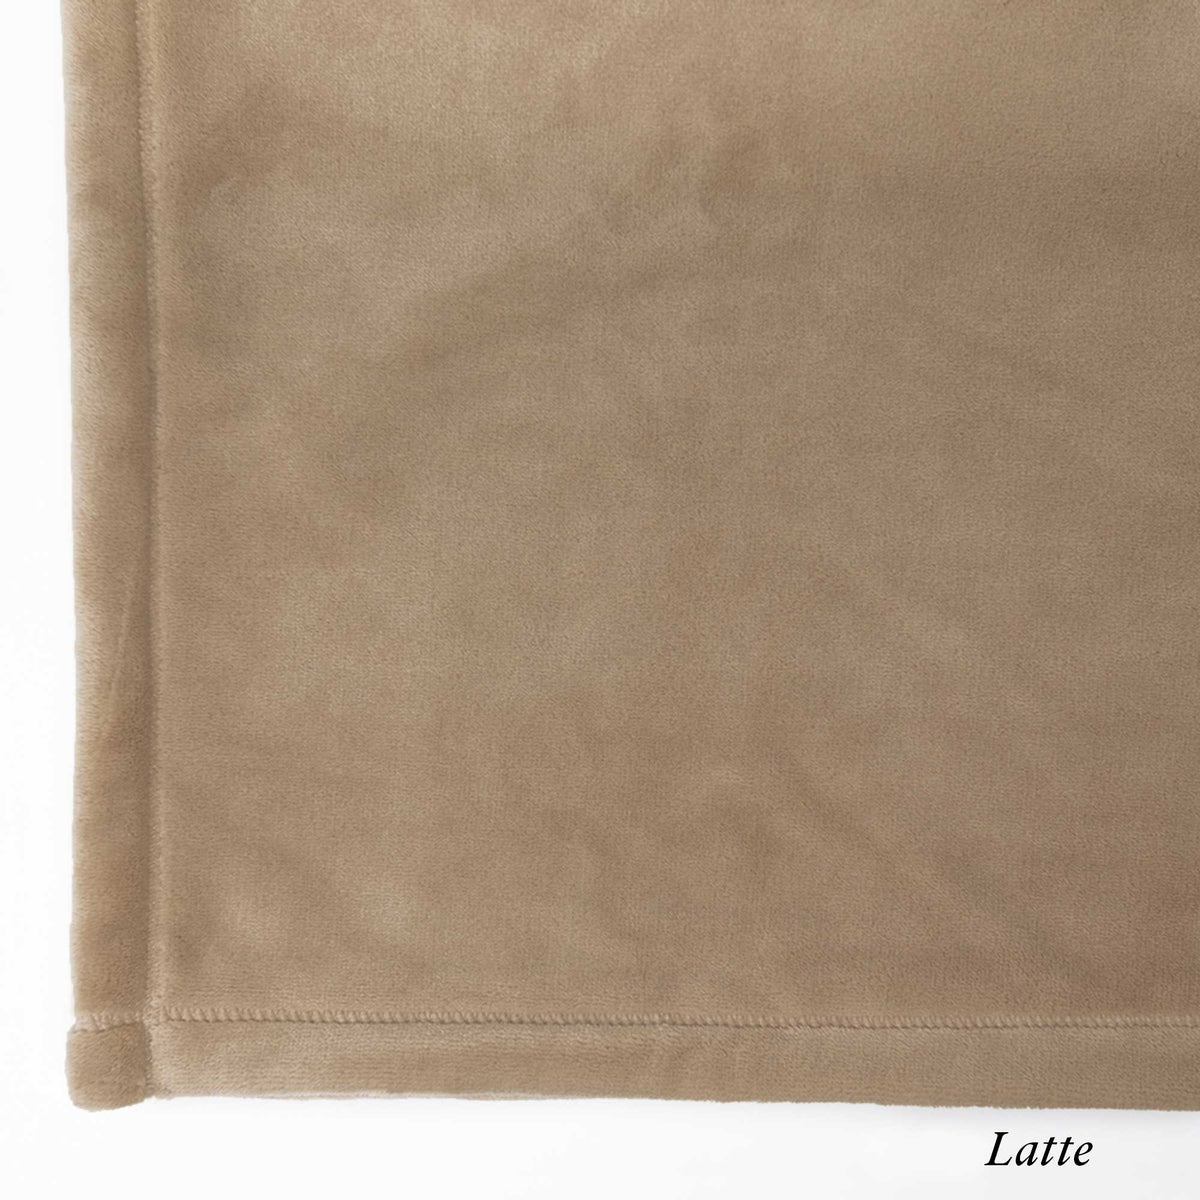 Latte Loft Fleece Swatch - Luster Loft Fleece Blankets - American Blanket Company